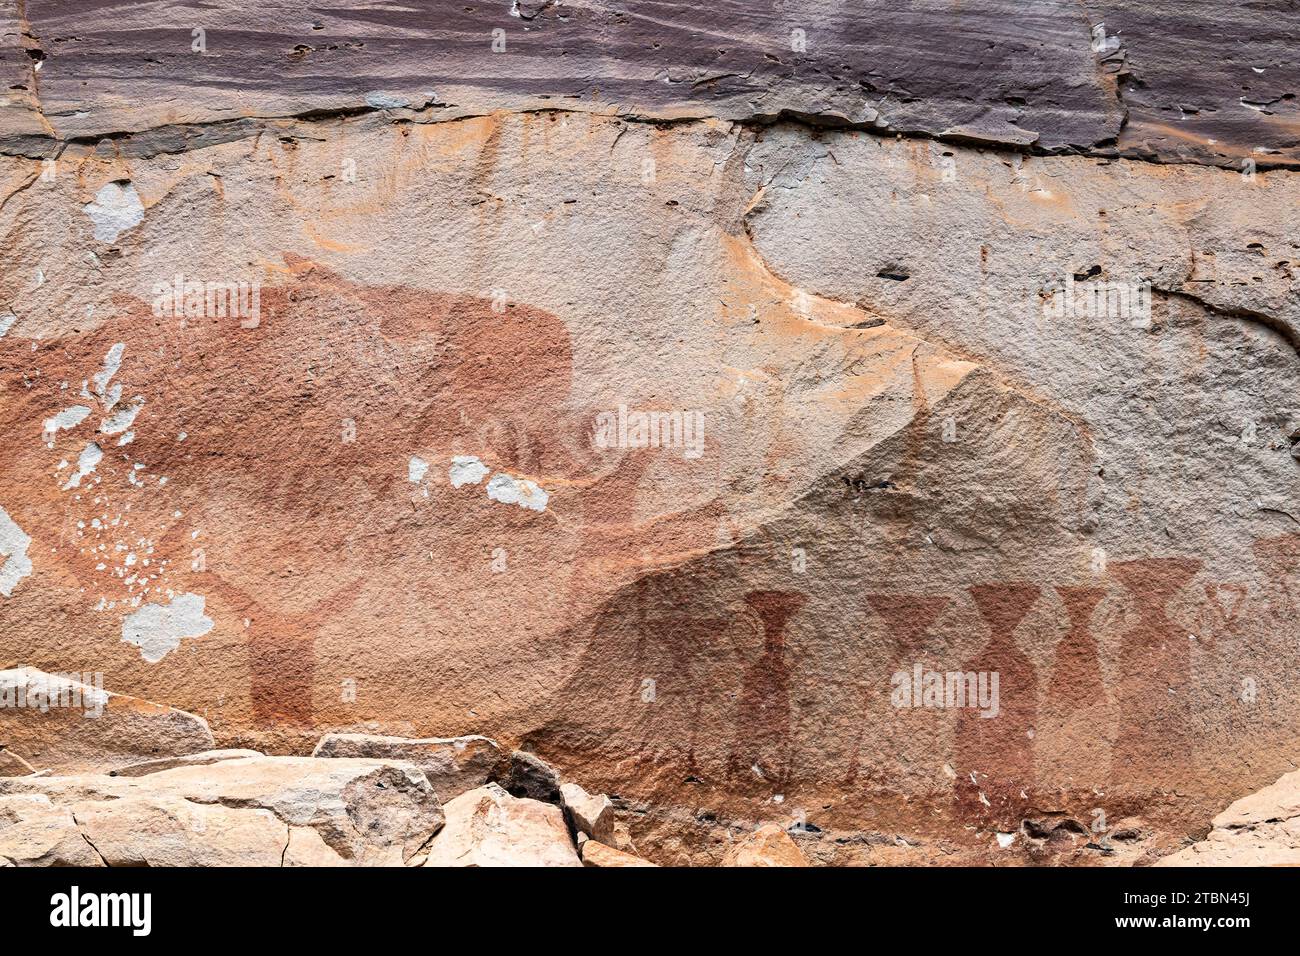 Parc national de PHA Taem, peintures rupestres préhistoriques à la falaise du Mékong (fleuve), site du Groupe 2, Ubon Ratchathani, Isan, Thaïlande, Asie du Sud-est, Asie Banque D'Images